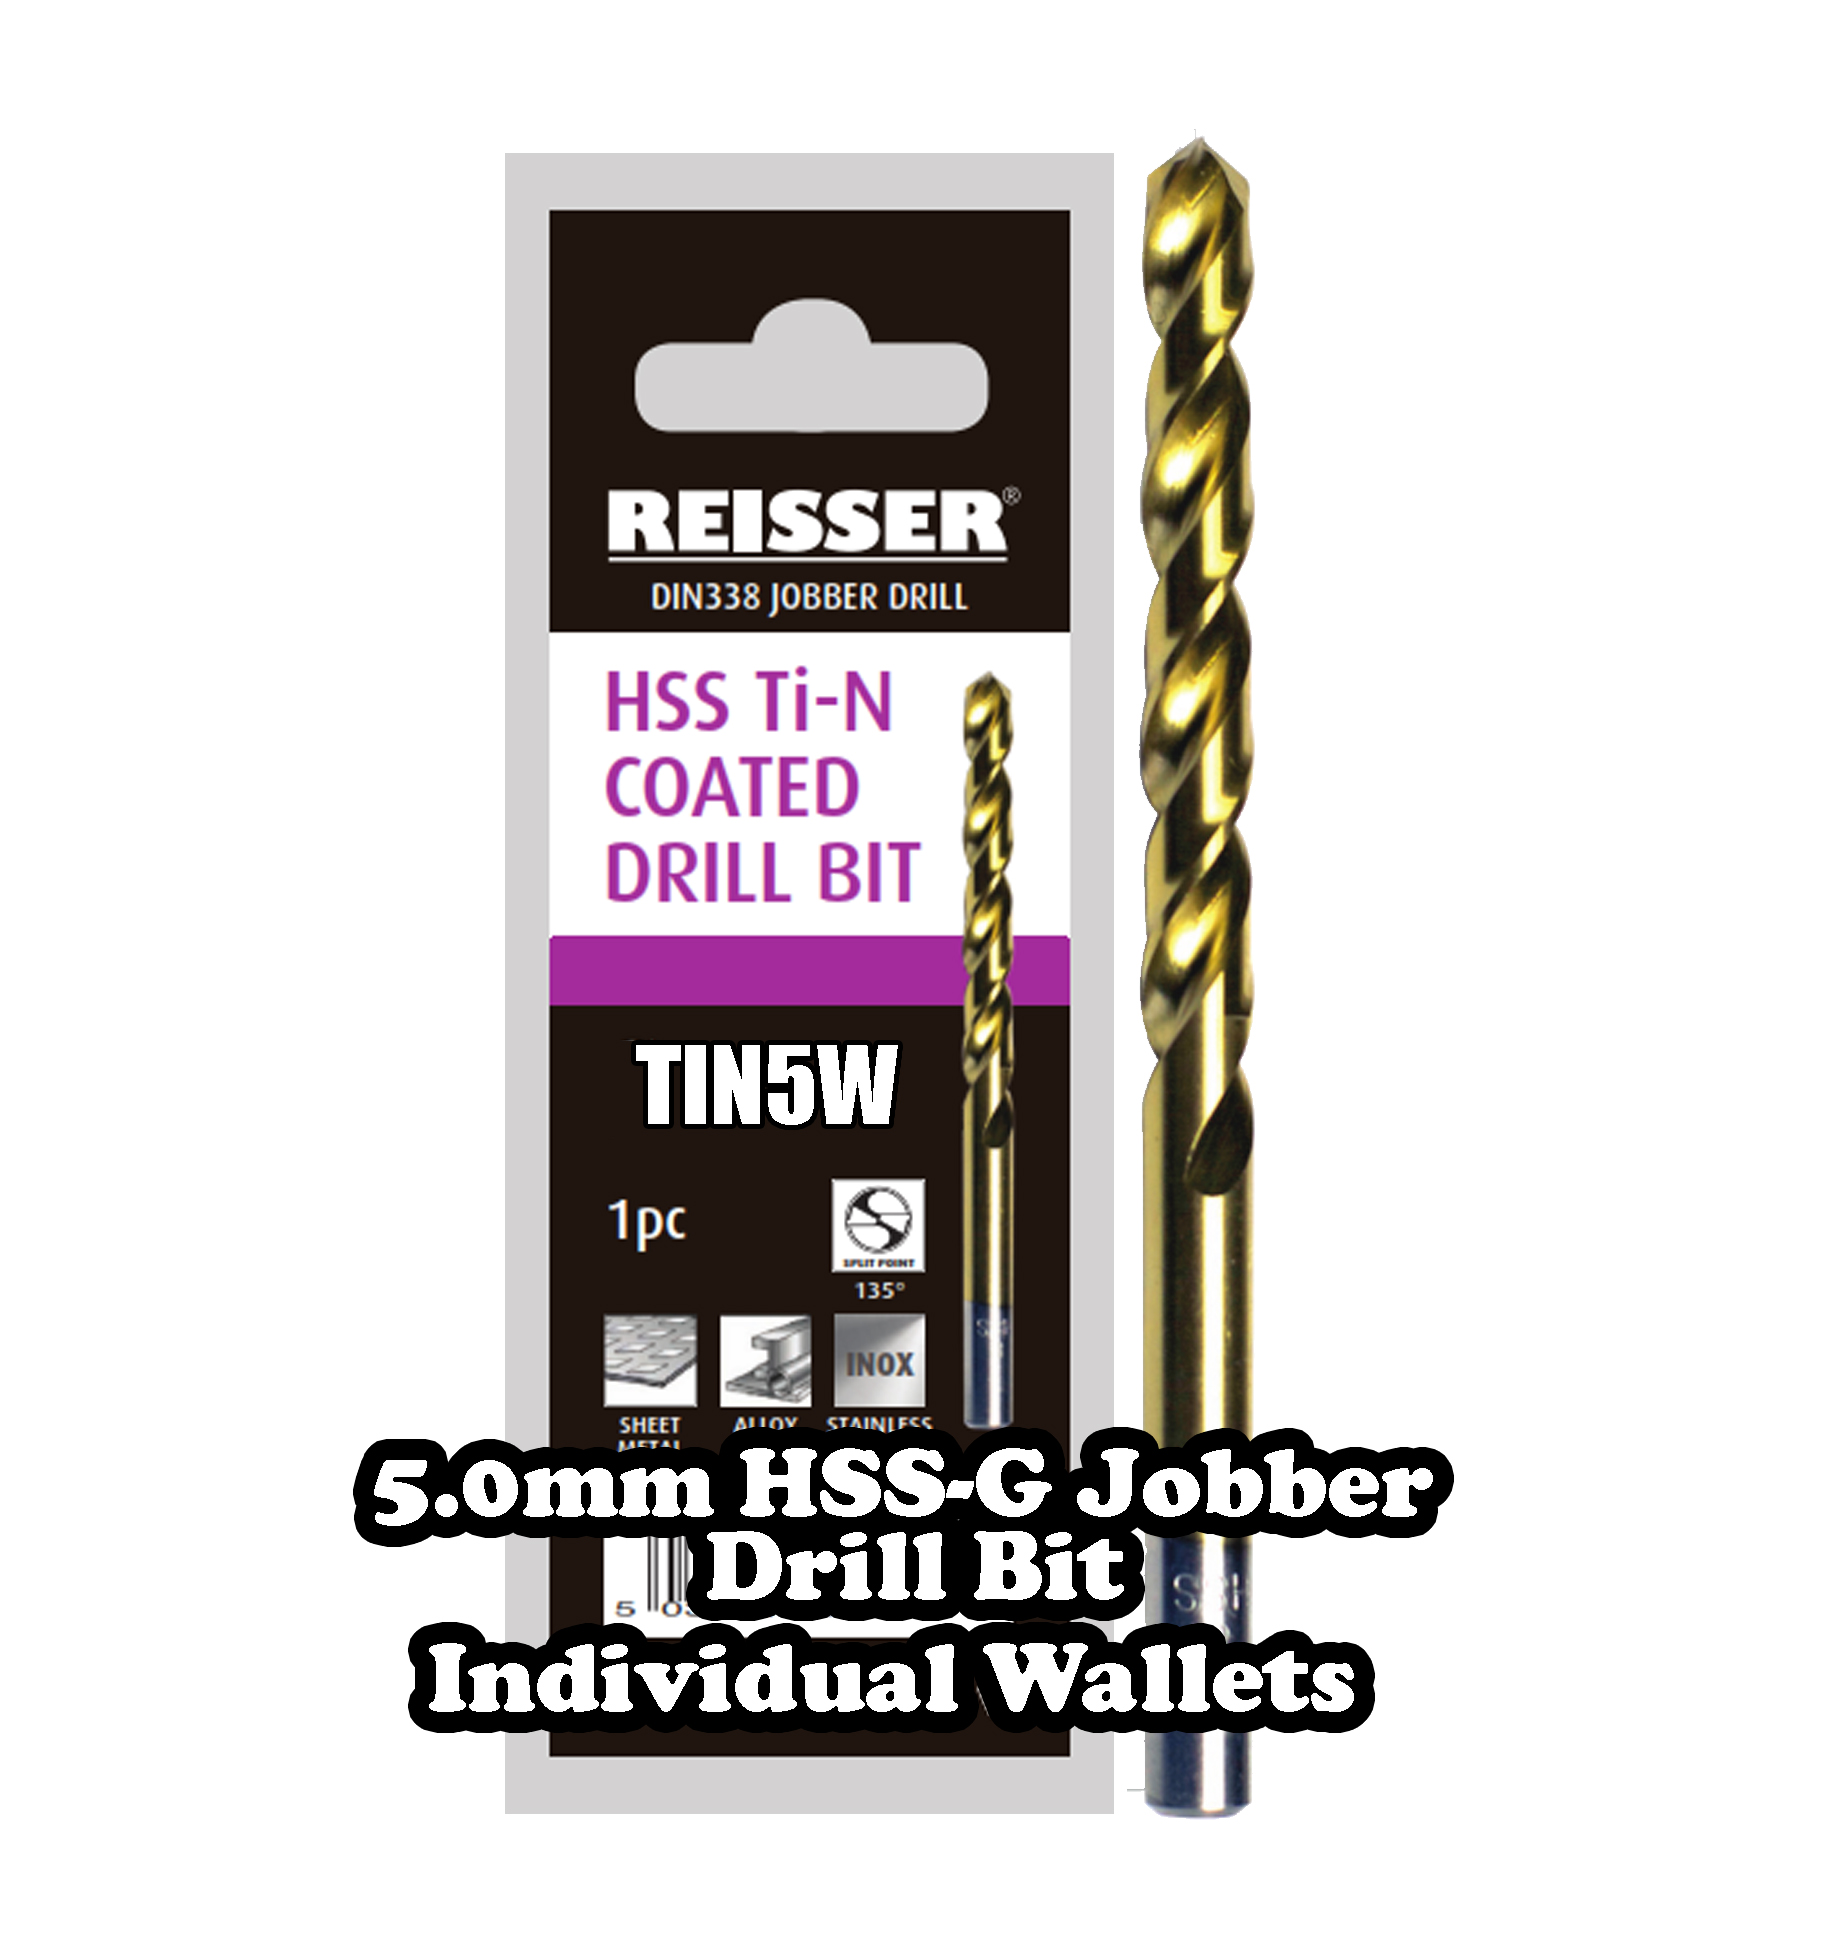 5.0mm HSS Jobber Drill Bit (SINGLE WALLET)